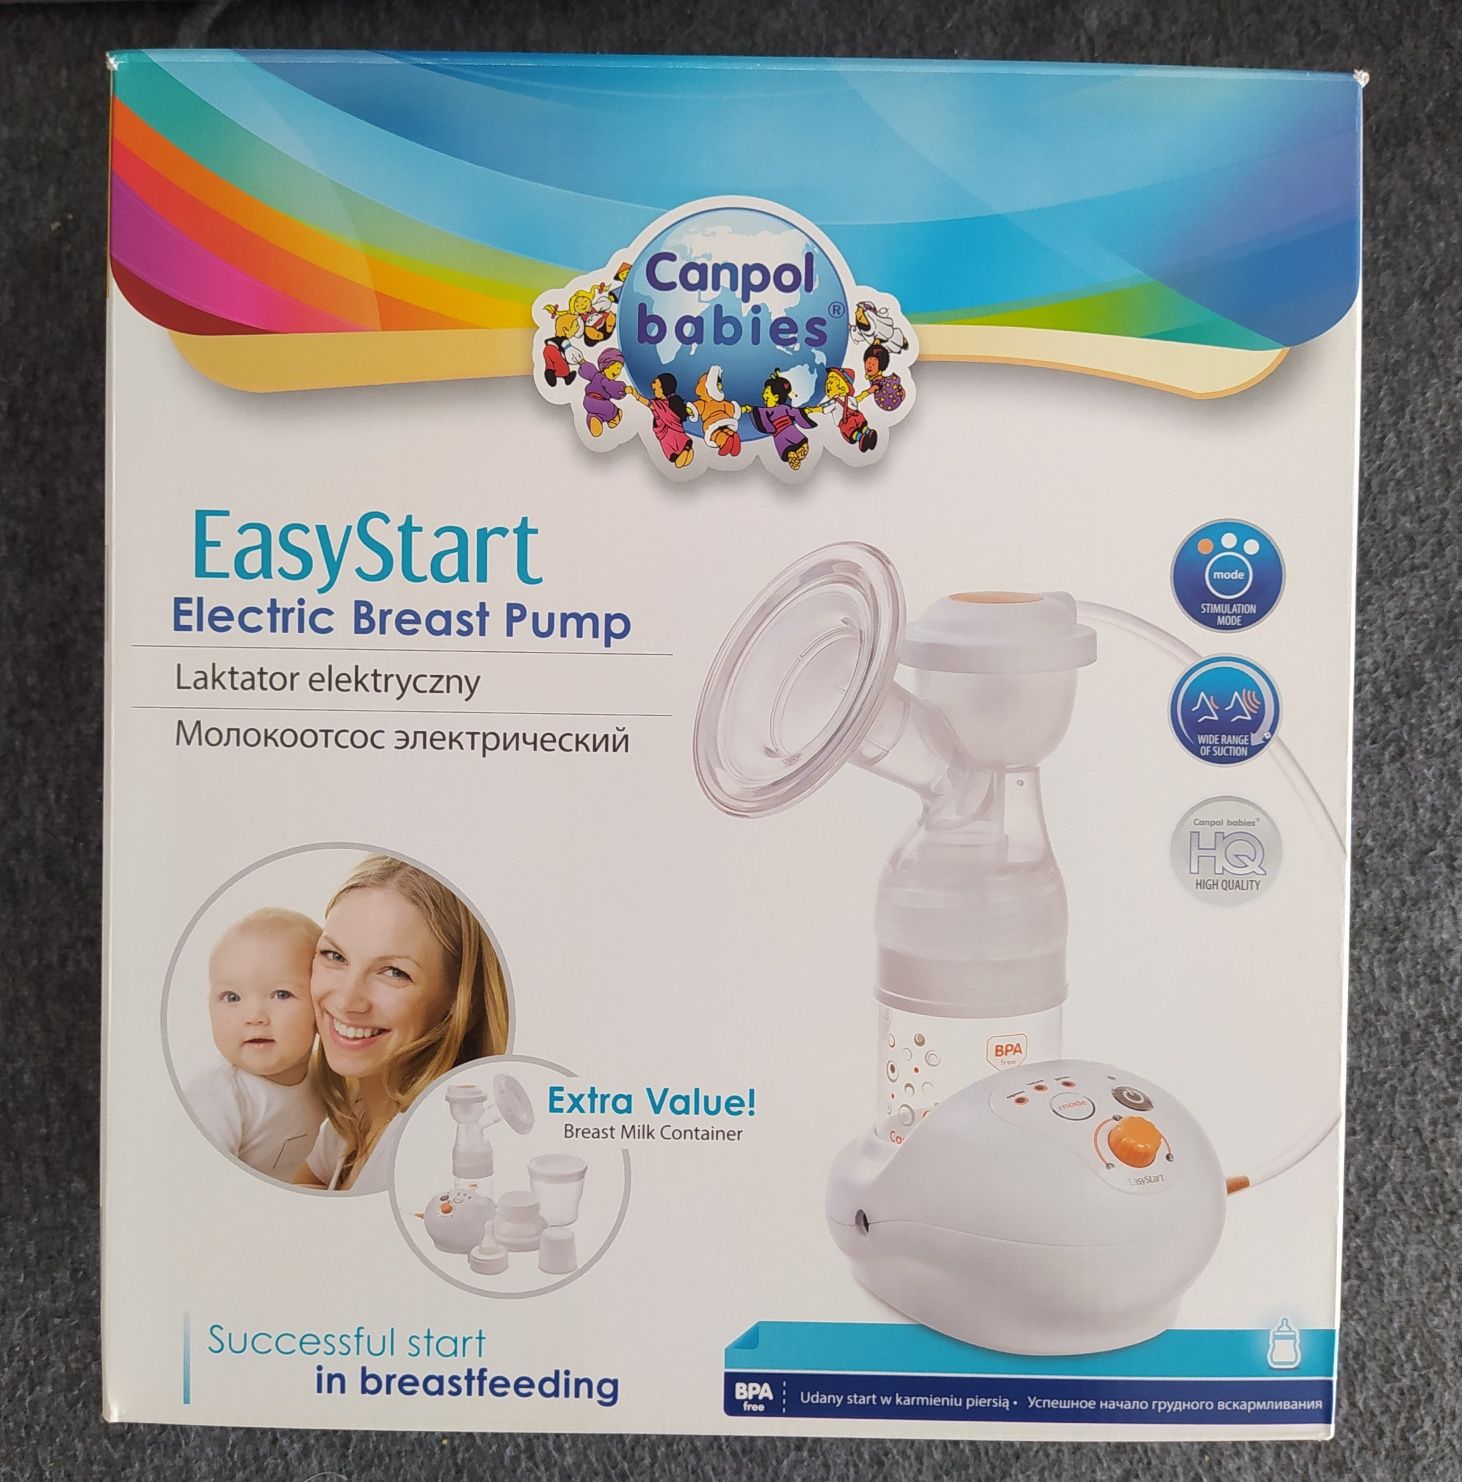 Canpol Babies Laktator Elektryczny

Easy Start